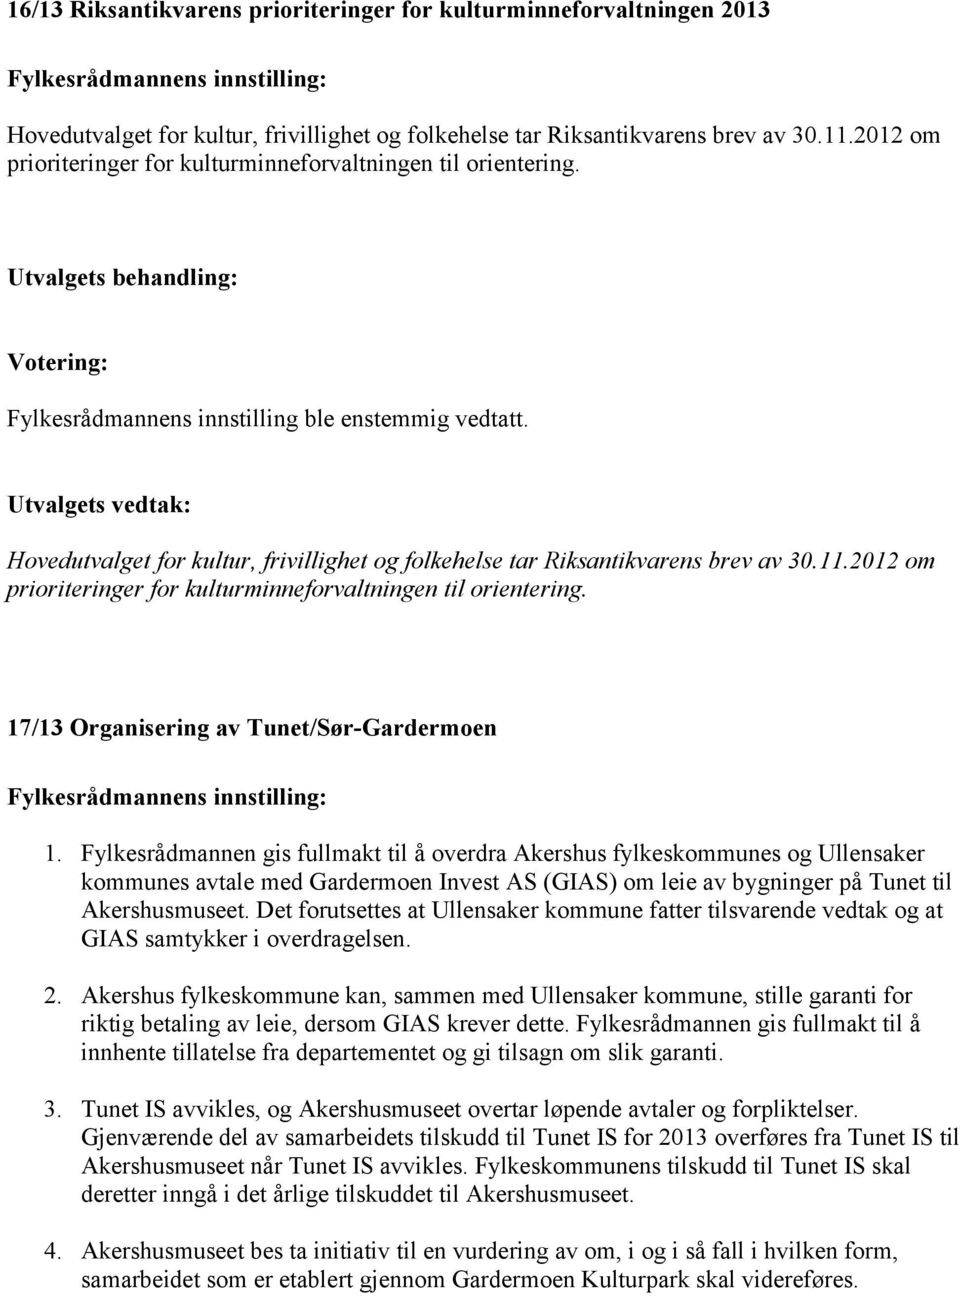 Utvalgets vedtak: Hovedutvalget for kultur, frivillighet og folkehelse tar Riksantikvarens brev av 30.11.2012 om prioriteringer for kulturminneforvaltningen til orientering.